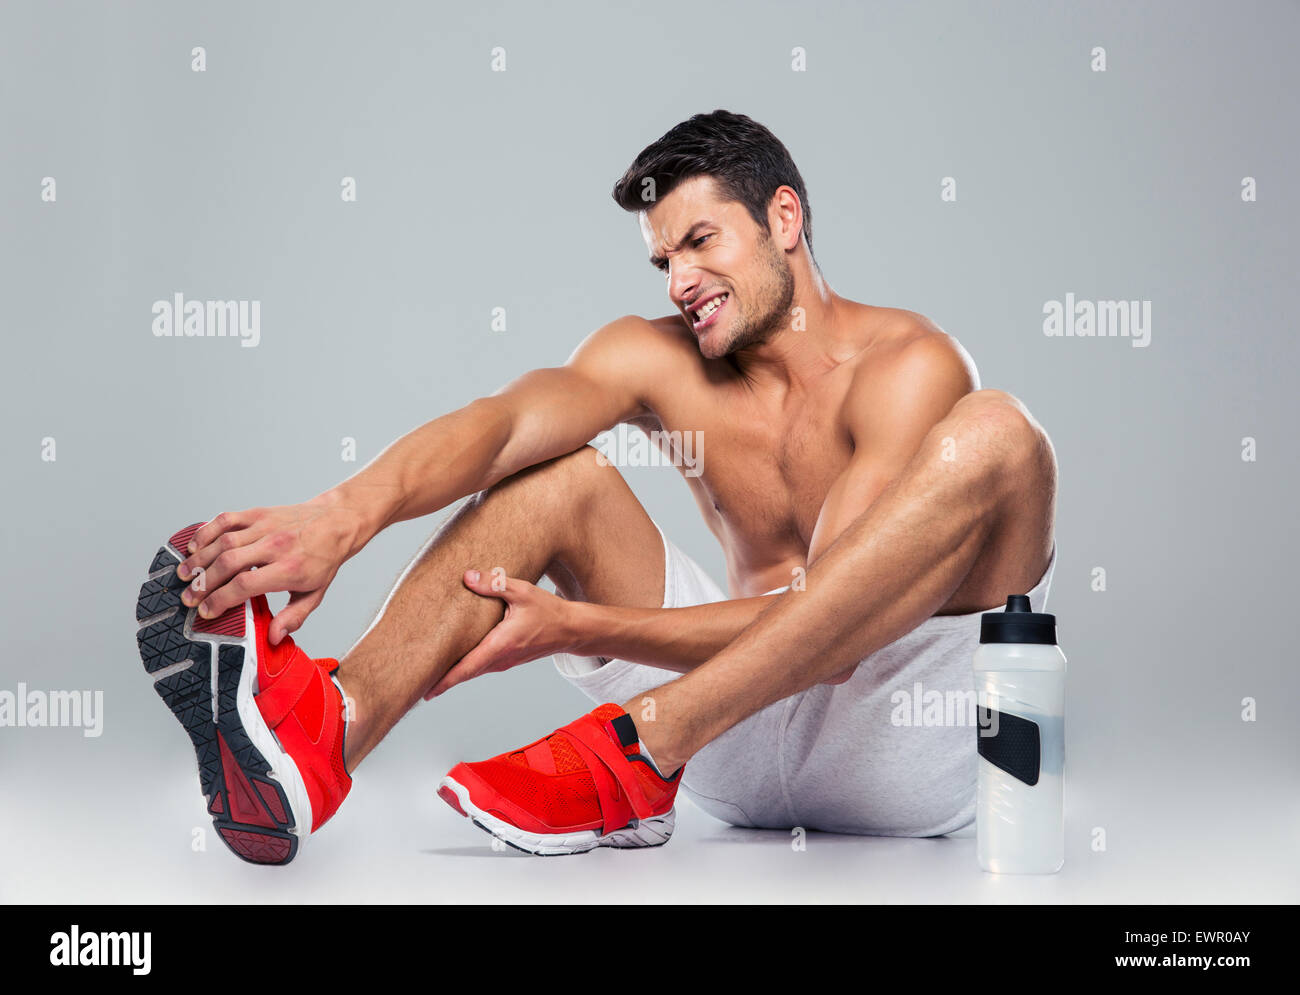 Ritratto di un uomo di fitness con dolore del piede su uno sfondo grigio Foto Stock